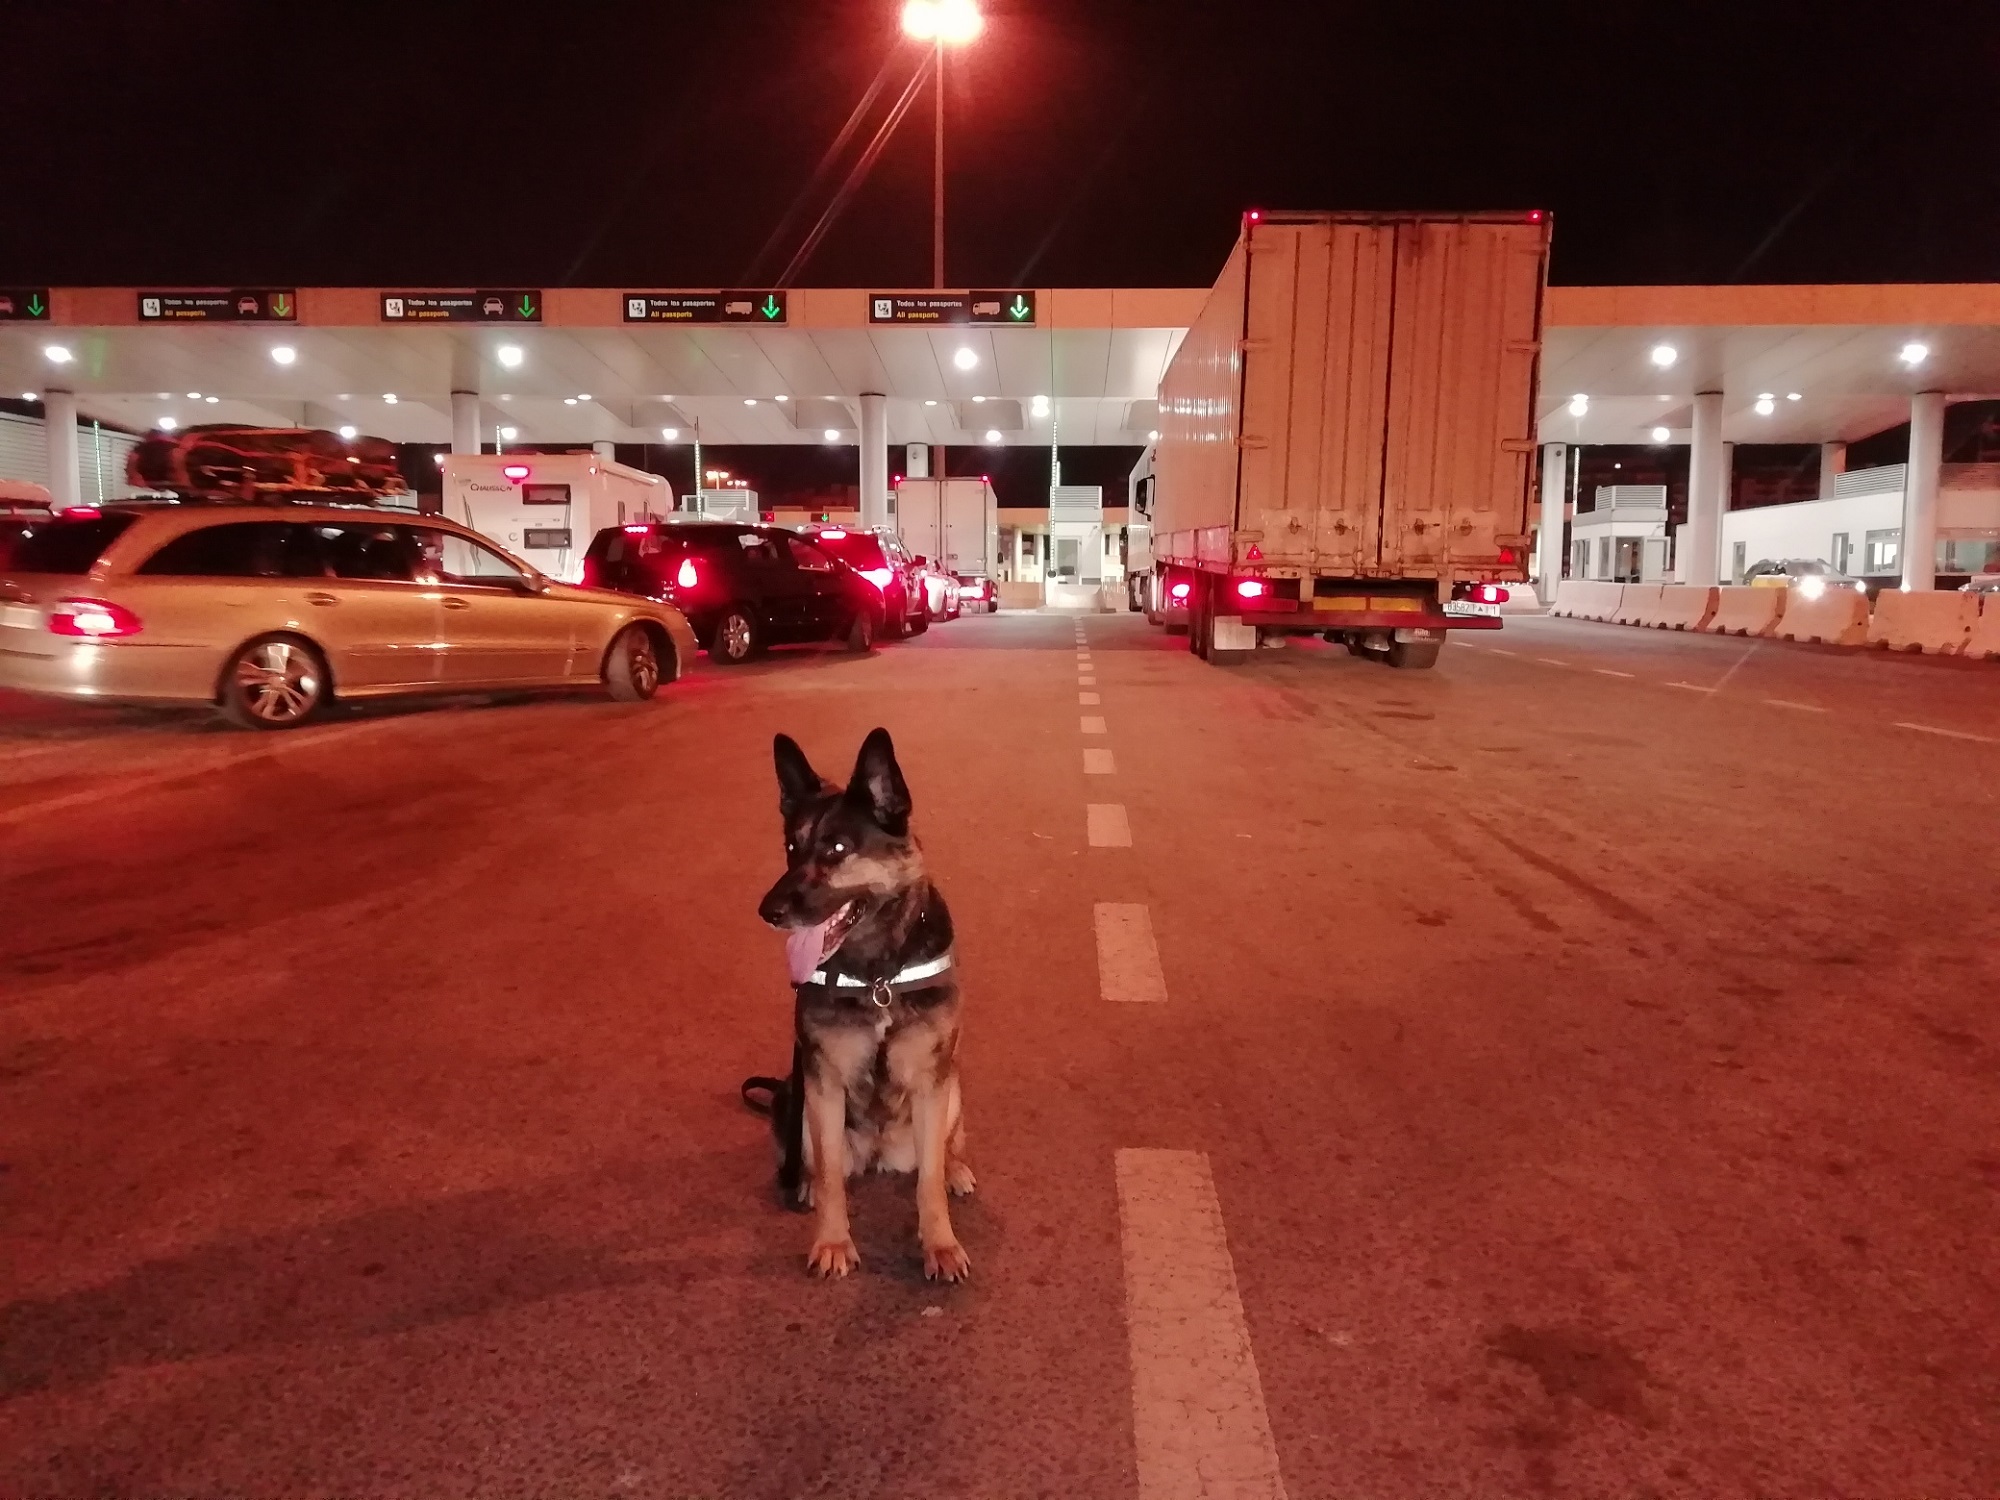 Koira istuu rajanylityspaikalla. Taustalla näkyy autoja. Kuva otettu yöllä.